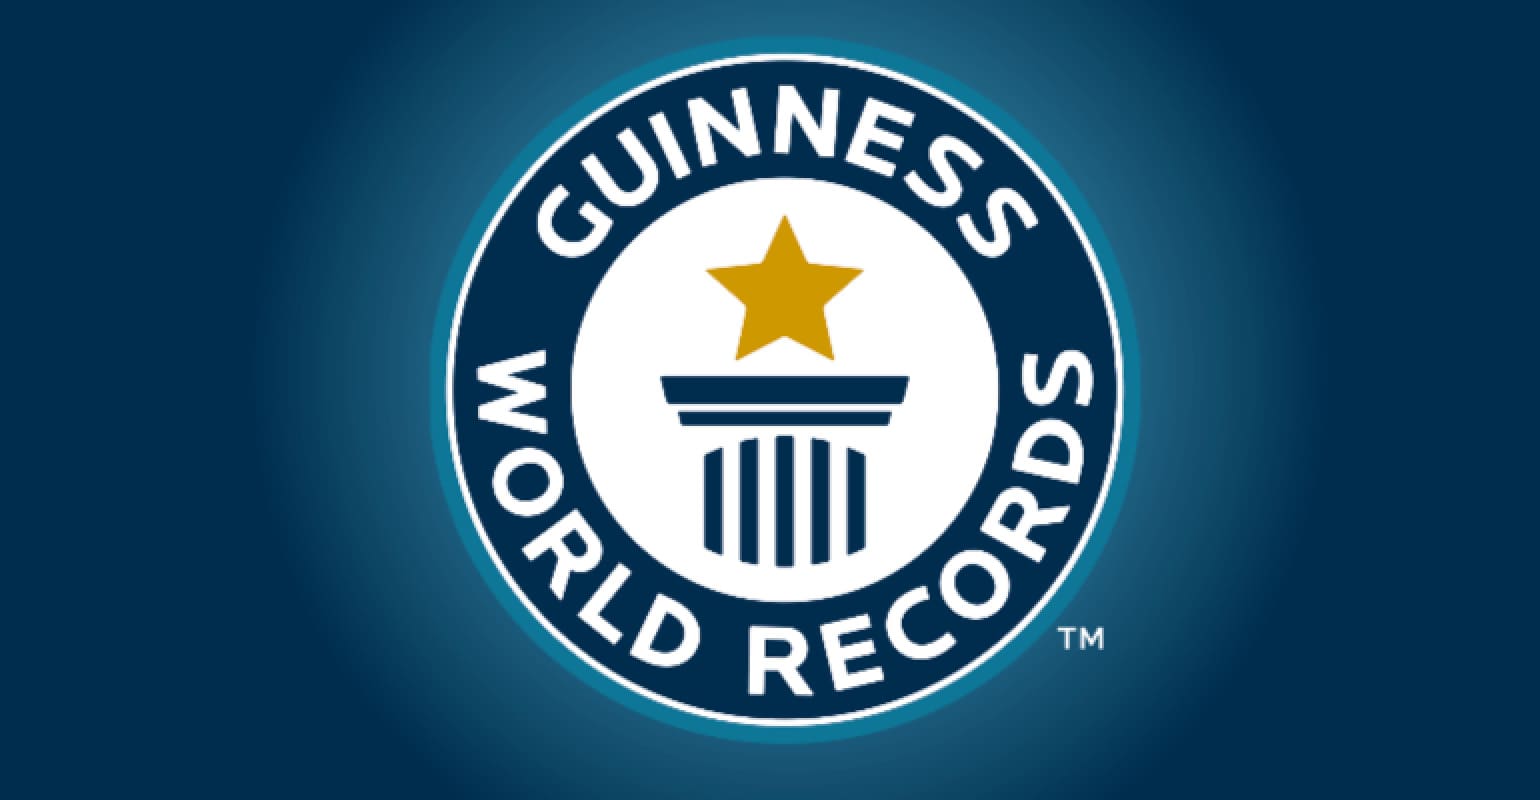 Giọng hát và 10 kỷ lục Guinness thế giới khó tin nhất